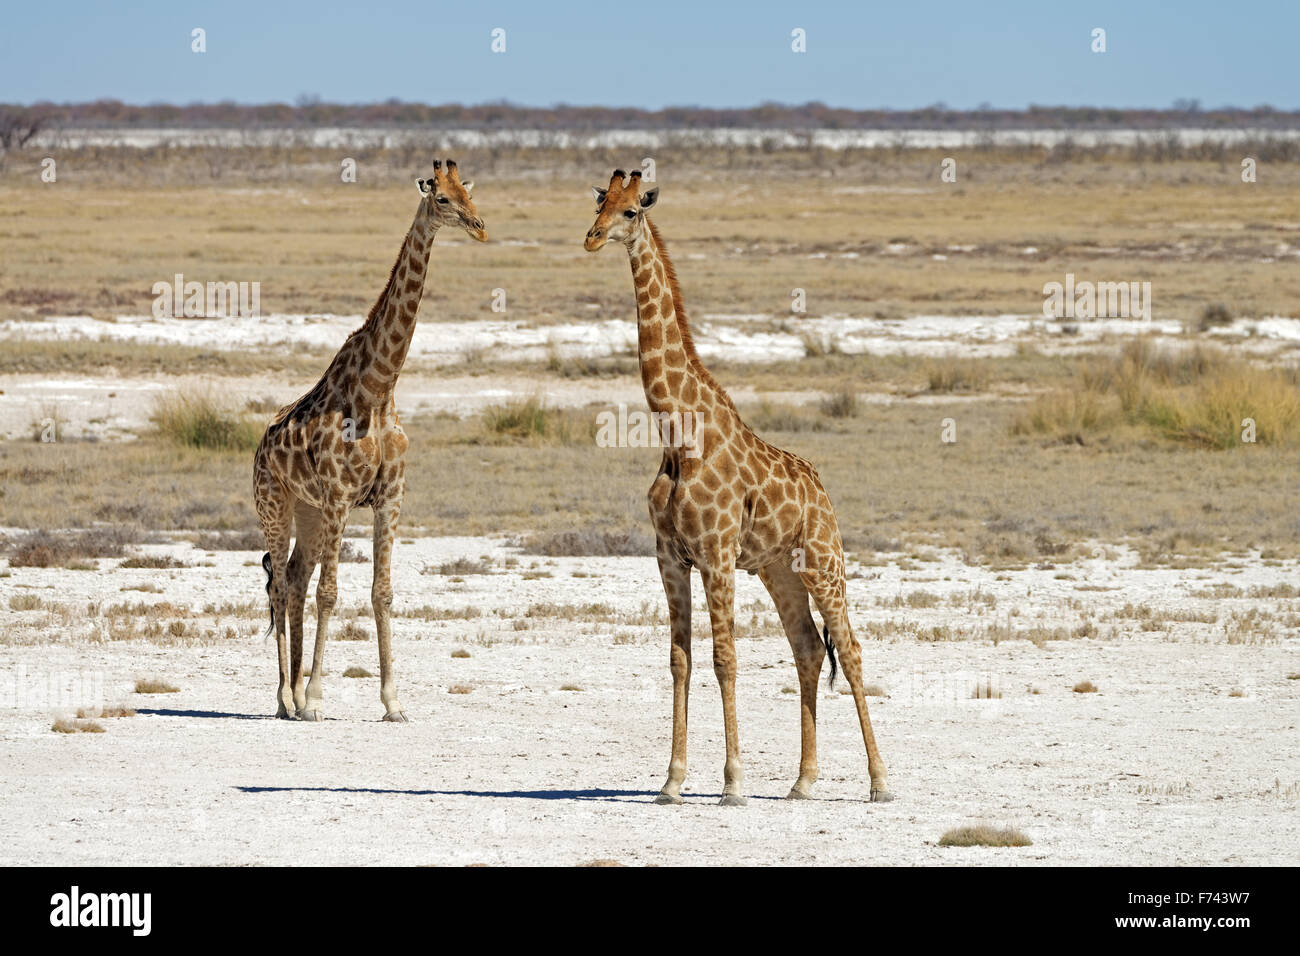 Two Angolan Giraffes (Giraffa camelopardalis angolensis) in Etosha National Park, Namibia Stock Photo